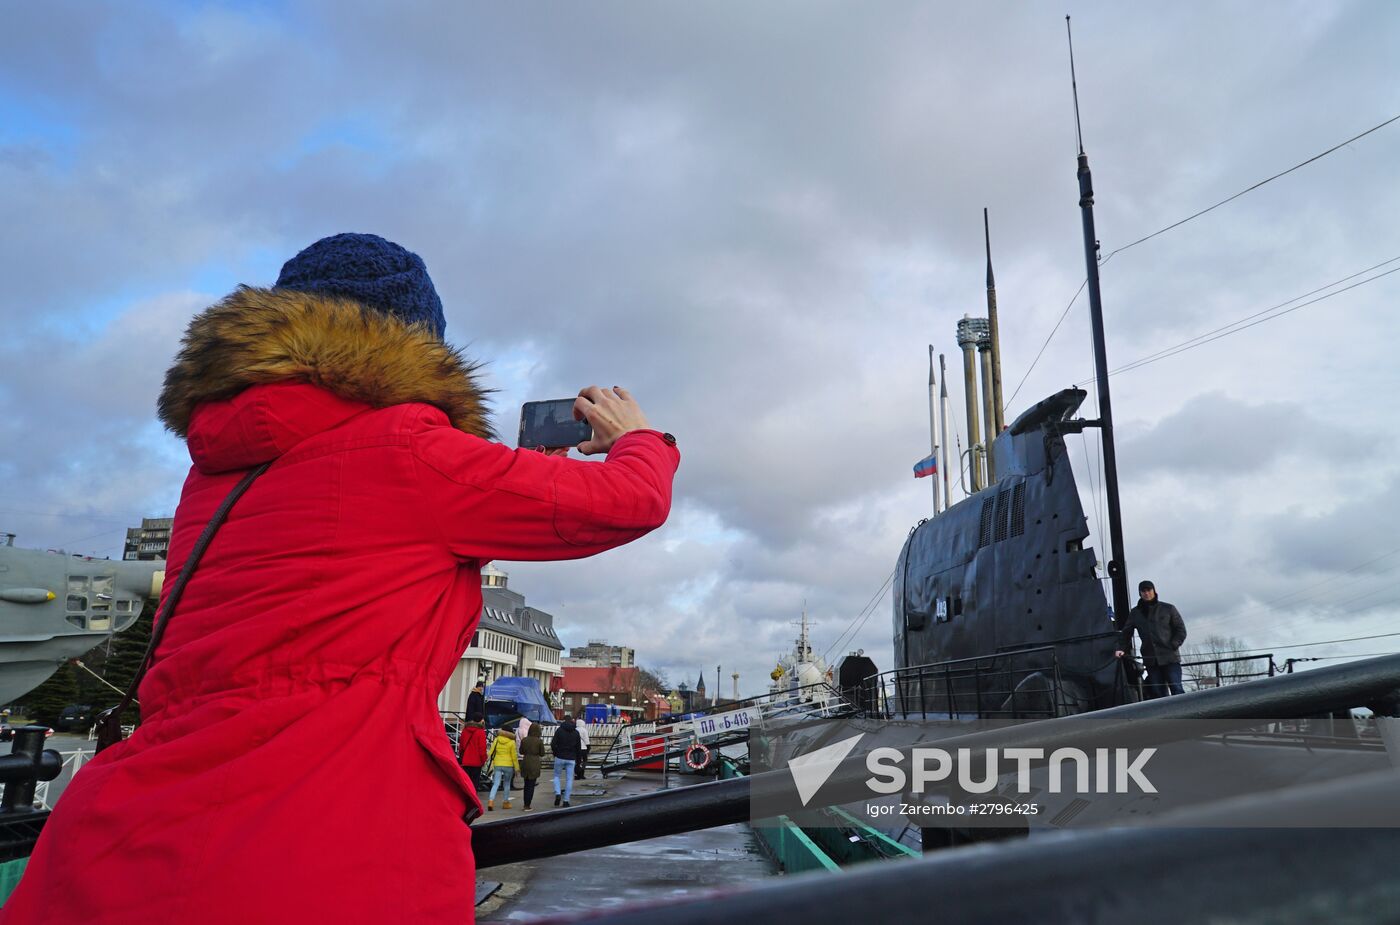 B-413 submarine at Museum of World Ocean in Kaliningrad